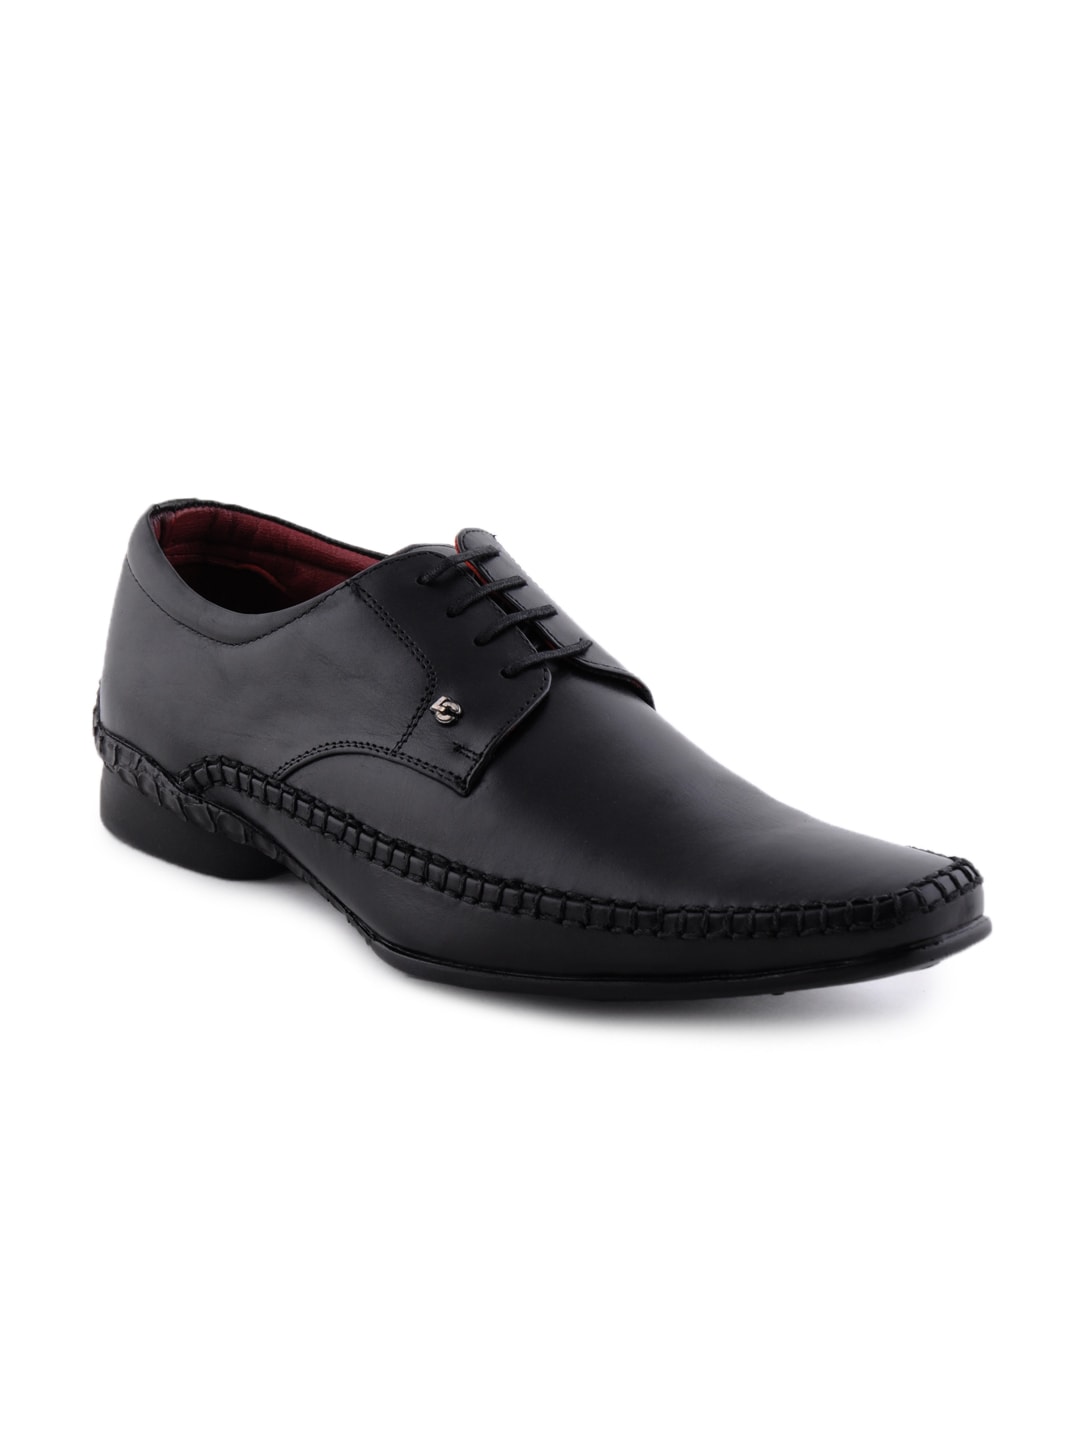 Lee Cooper Men Black Formal Shoes